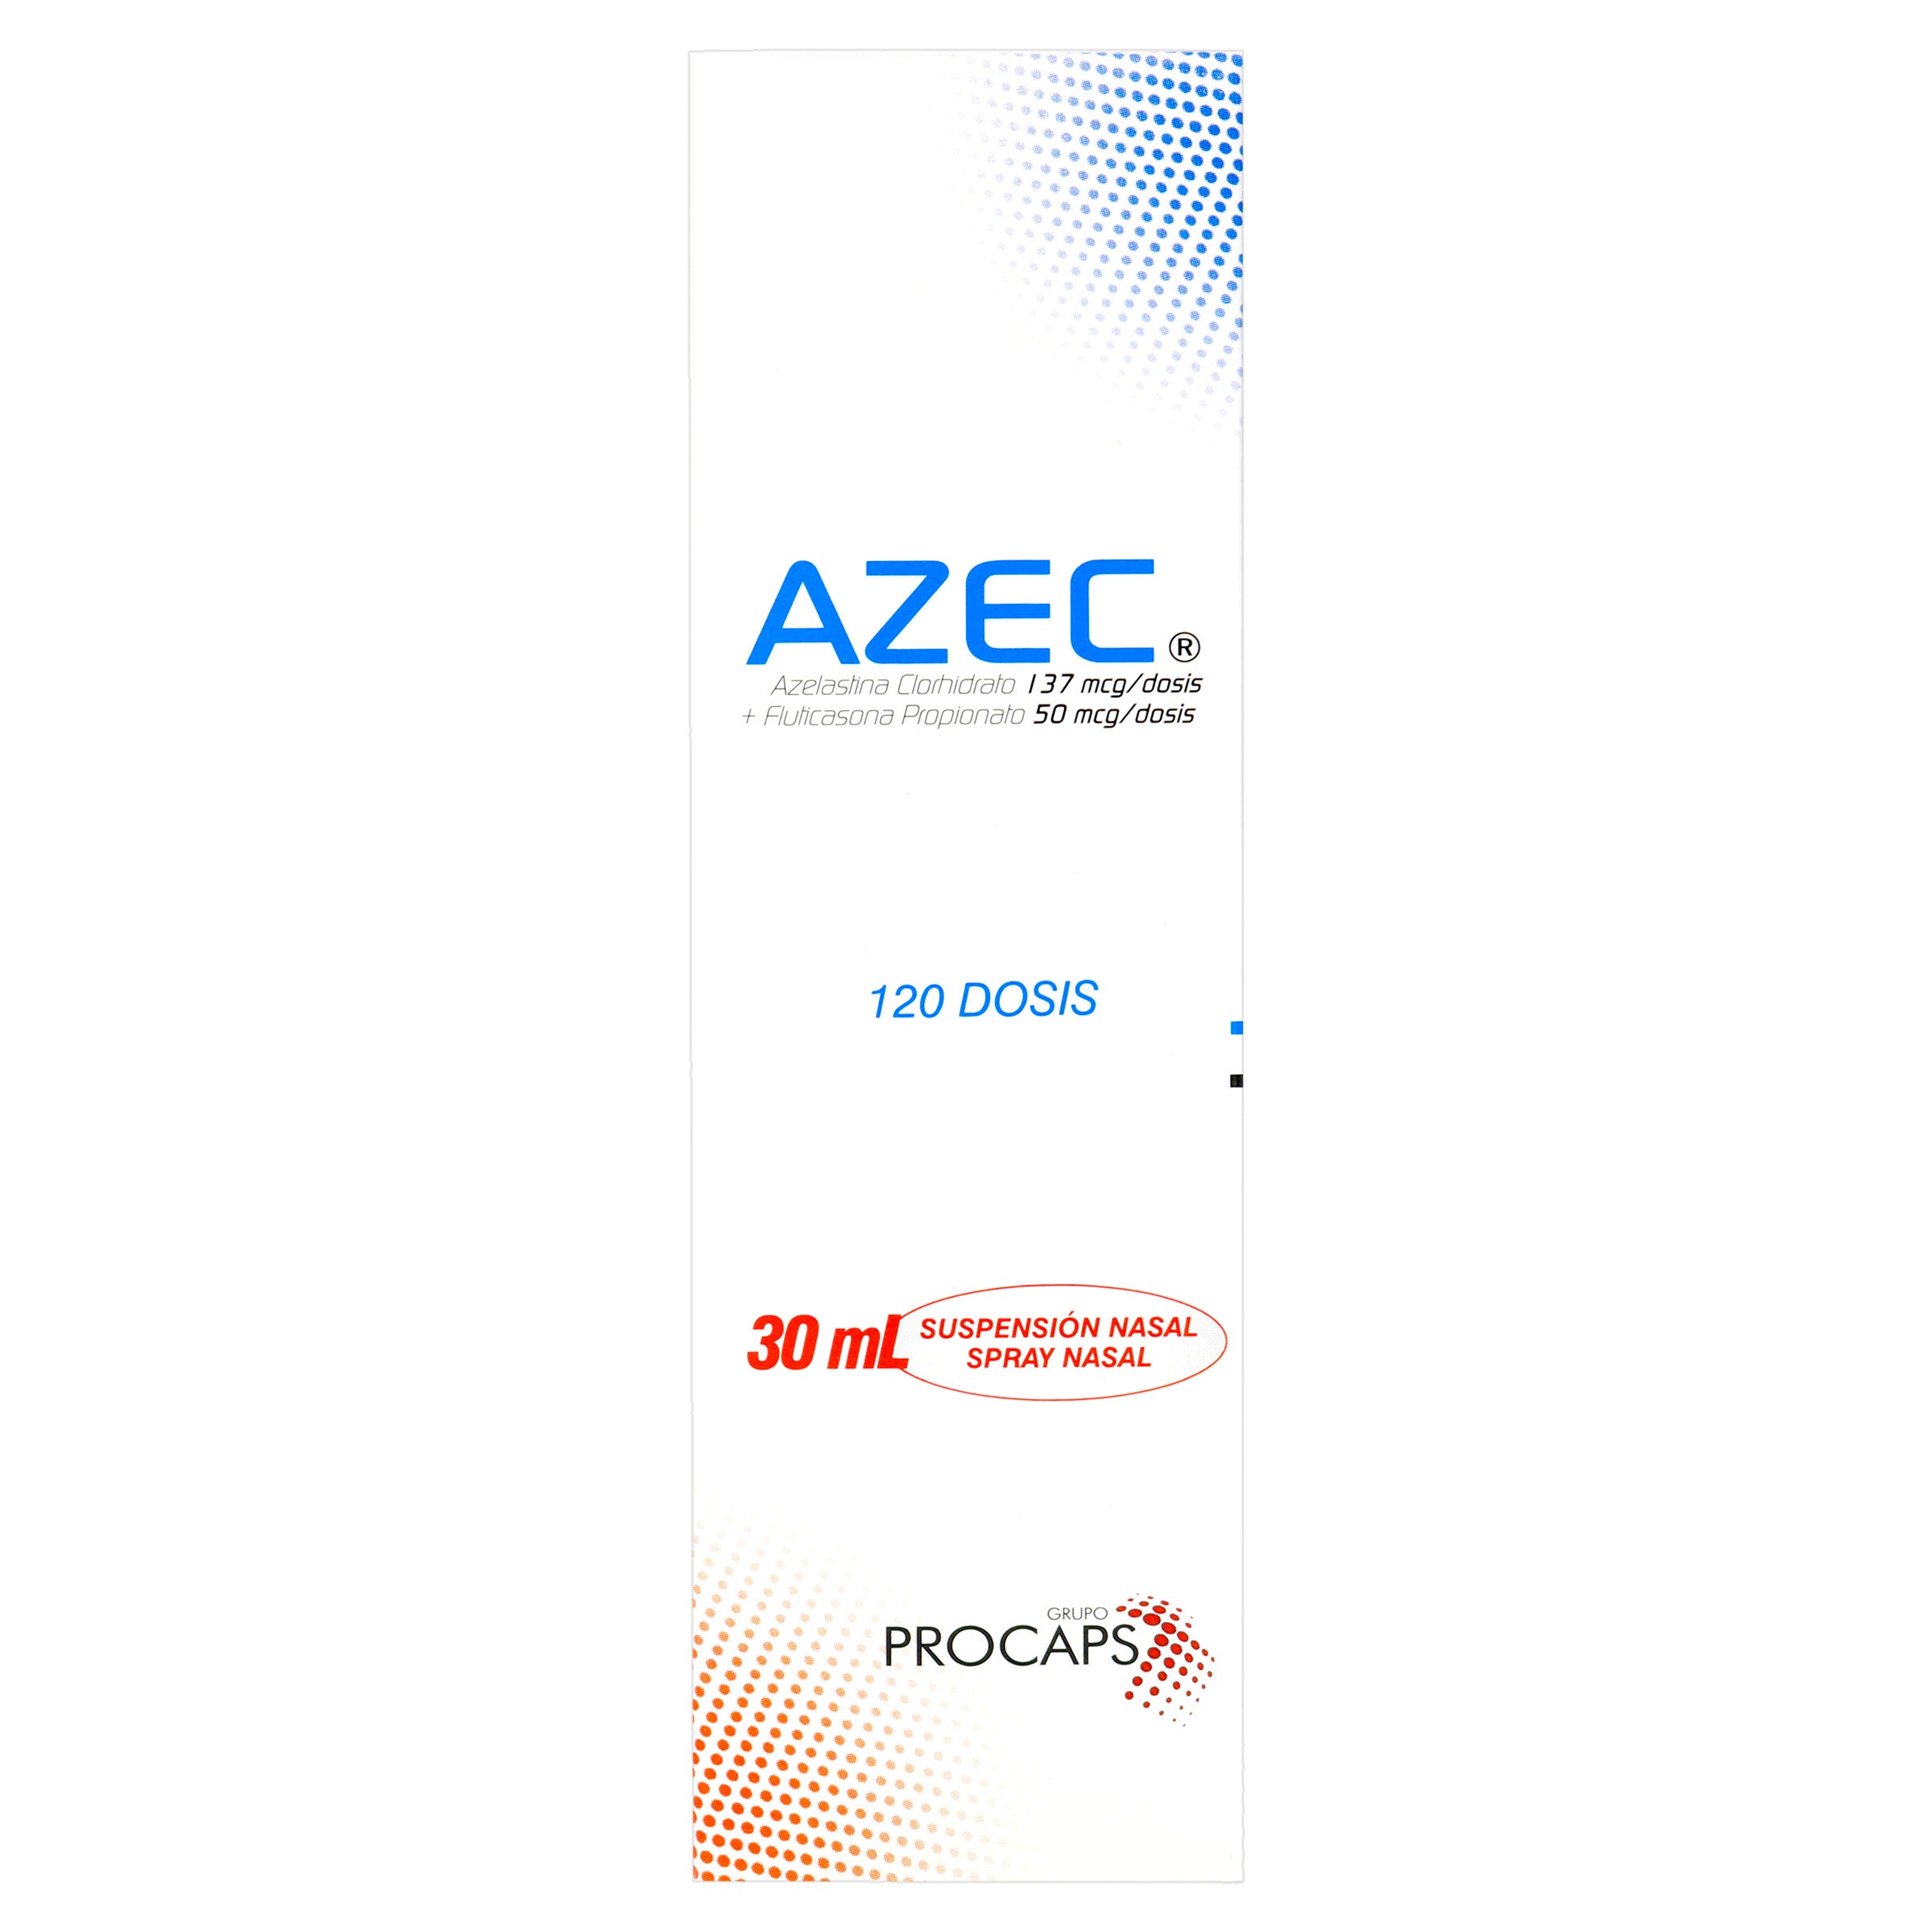 AZEC SUSPENSION 120 DOSIS SPRAY NASAL PC - (CCC)